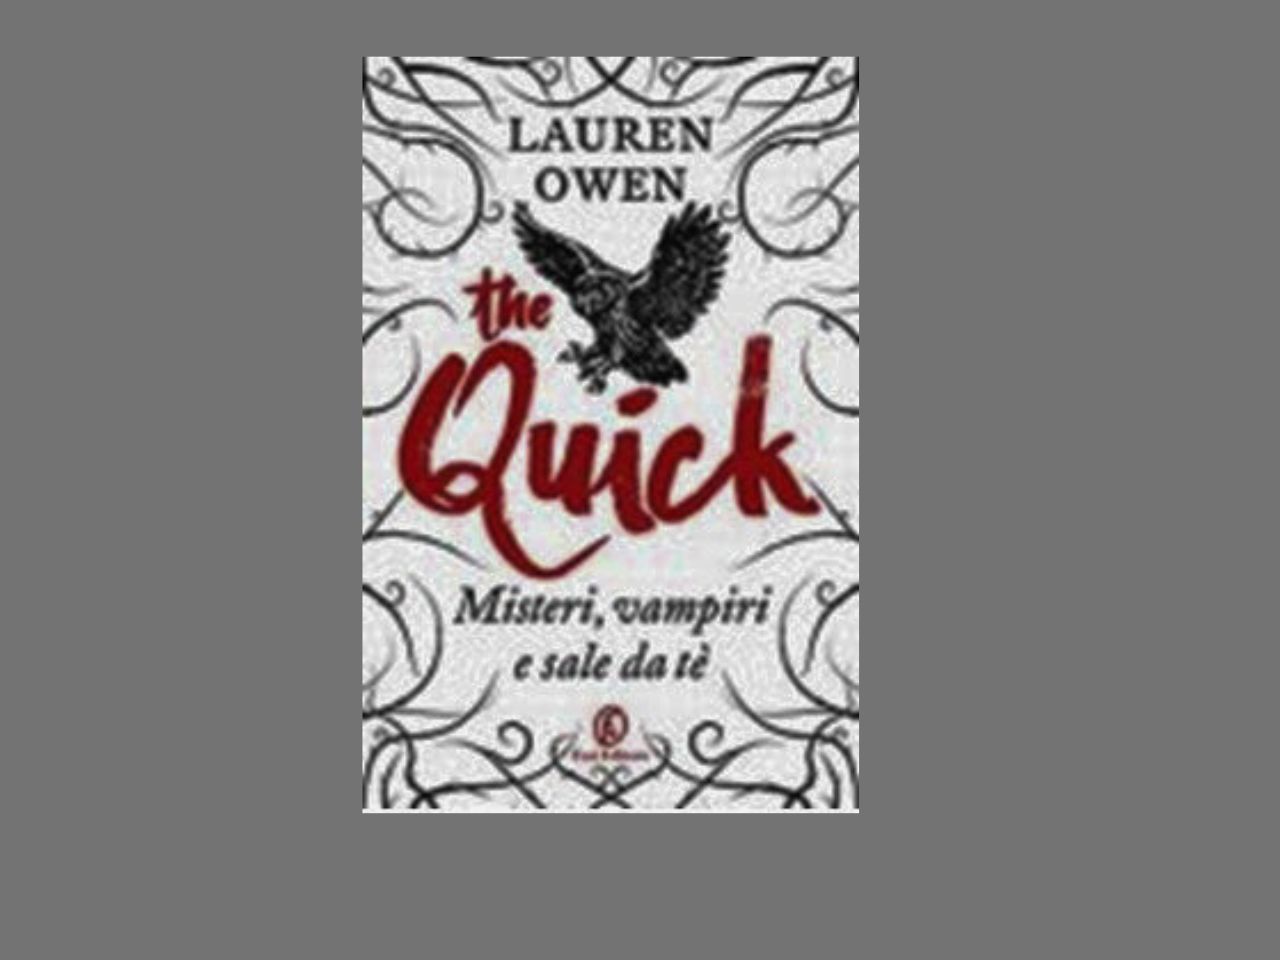 “The quick” di Lauren Owen